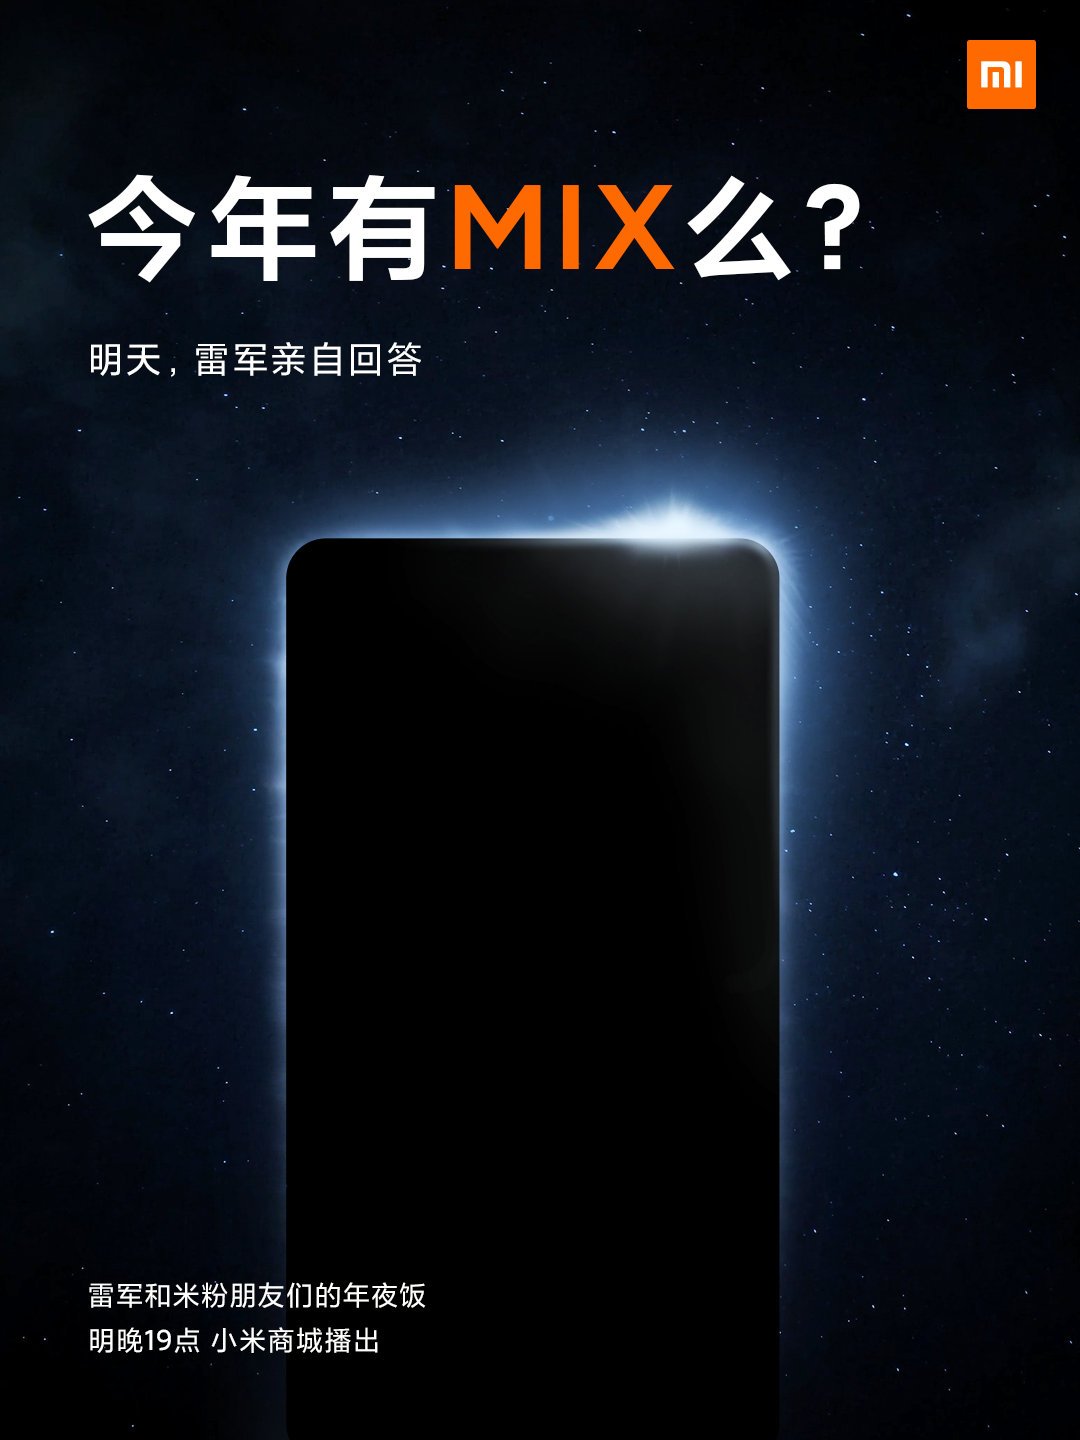 El smartphone más esperado de Xiaomi se lanzará este año: la Serie Mi Mix regresa. Noticias Xiaomi Adictos